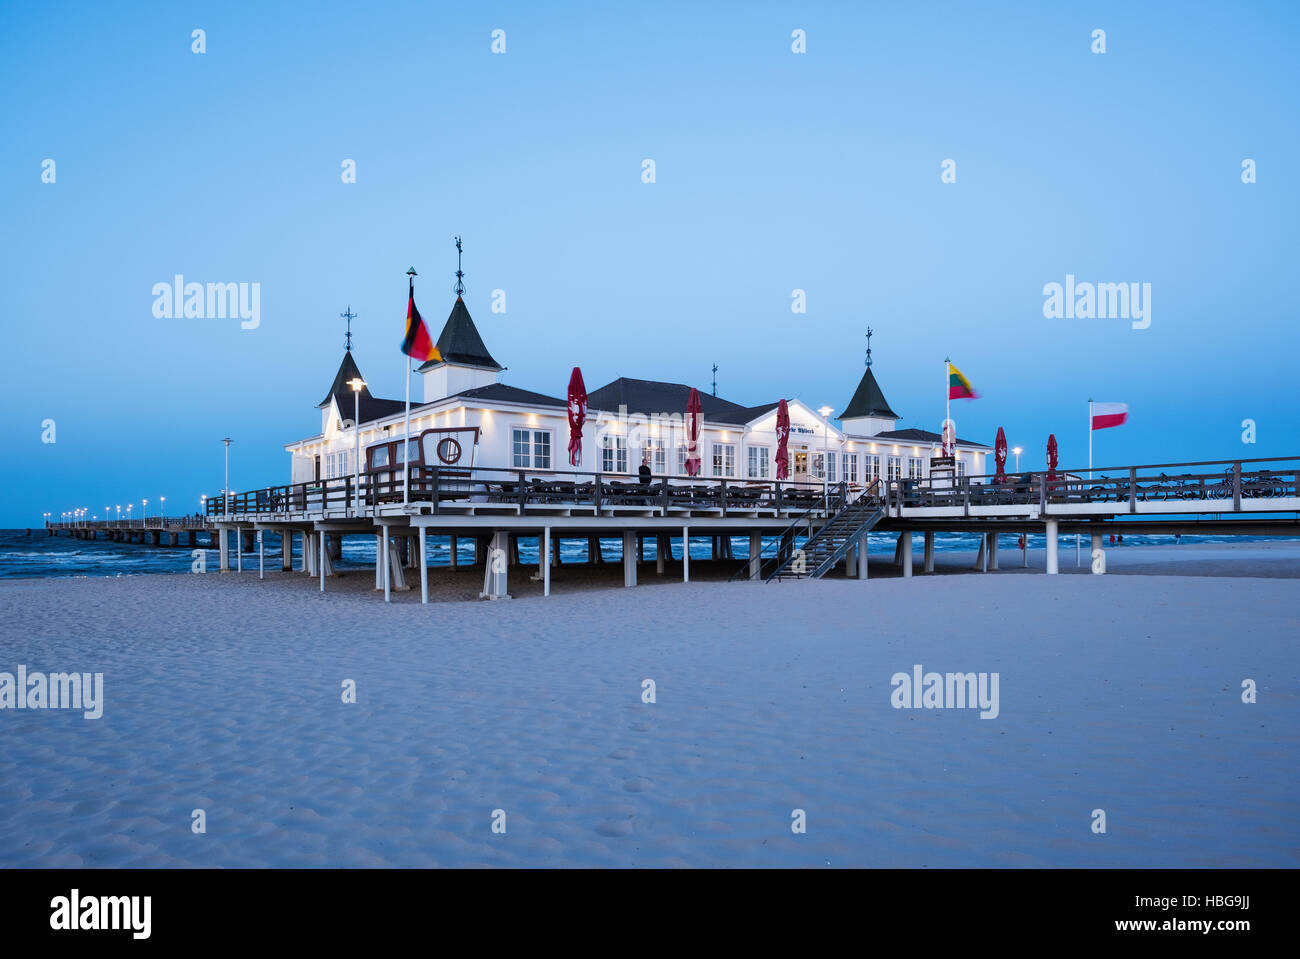 Ahlbeck Seaside Resort Pier in der Abenddämmerung, Ahlbeck, Heringsdorf, Usedom, Ostsee, Mecklenburg-Western Pomerania, Deutschland Stockfoto